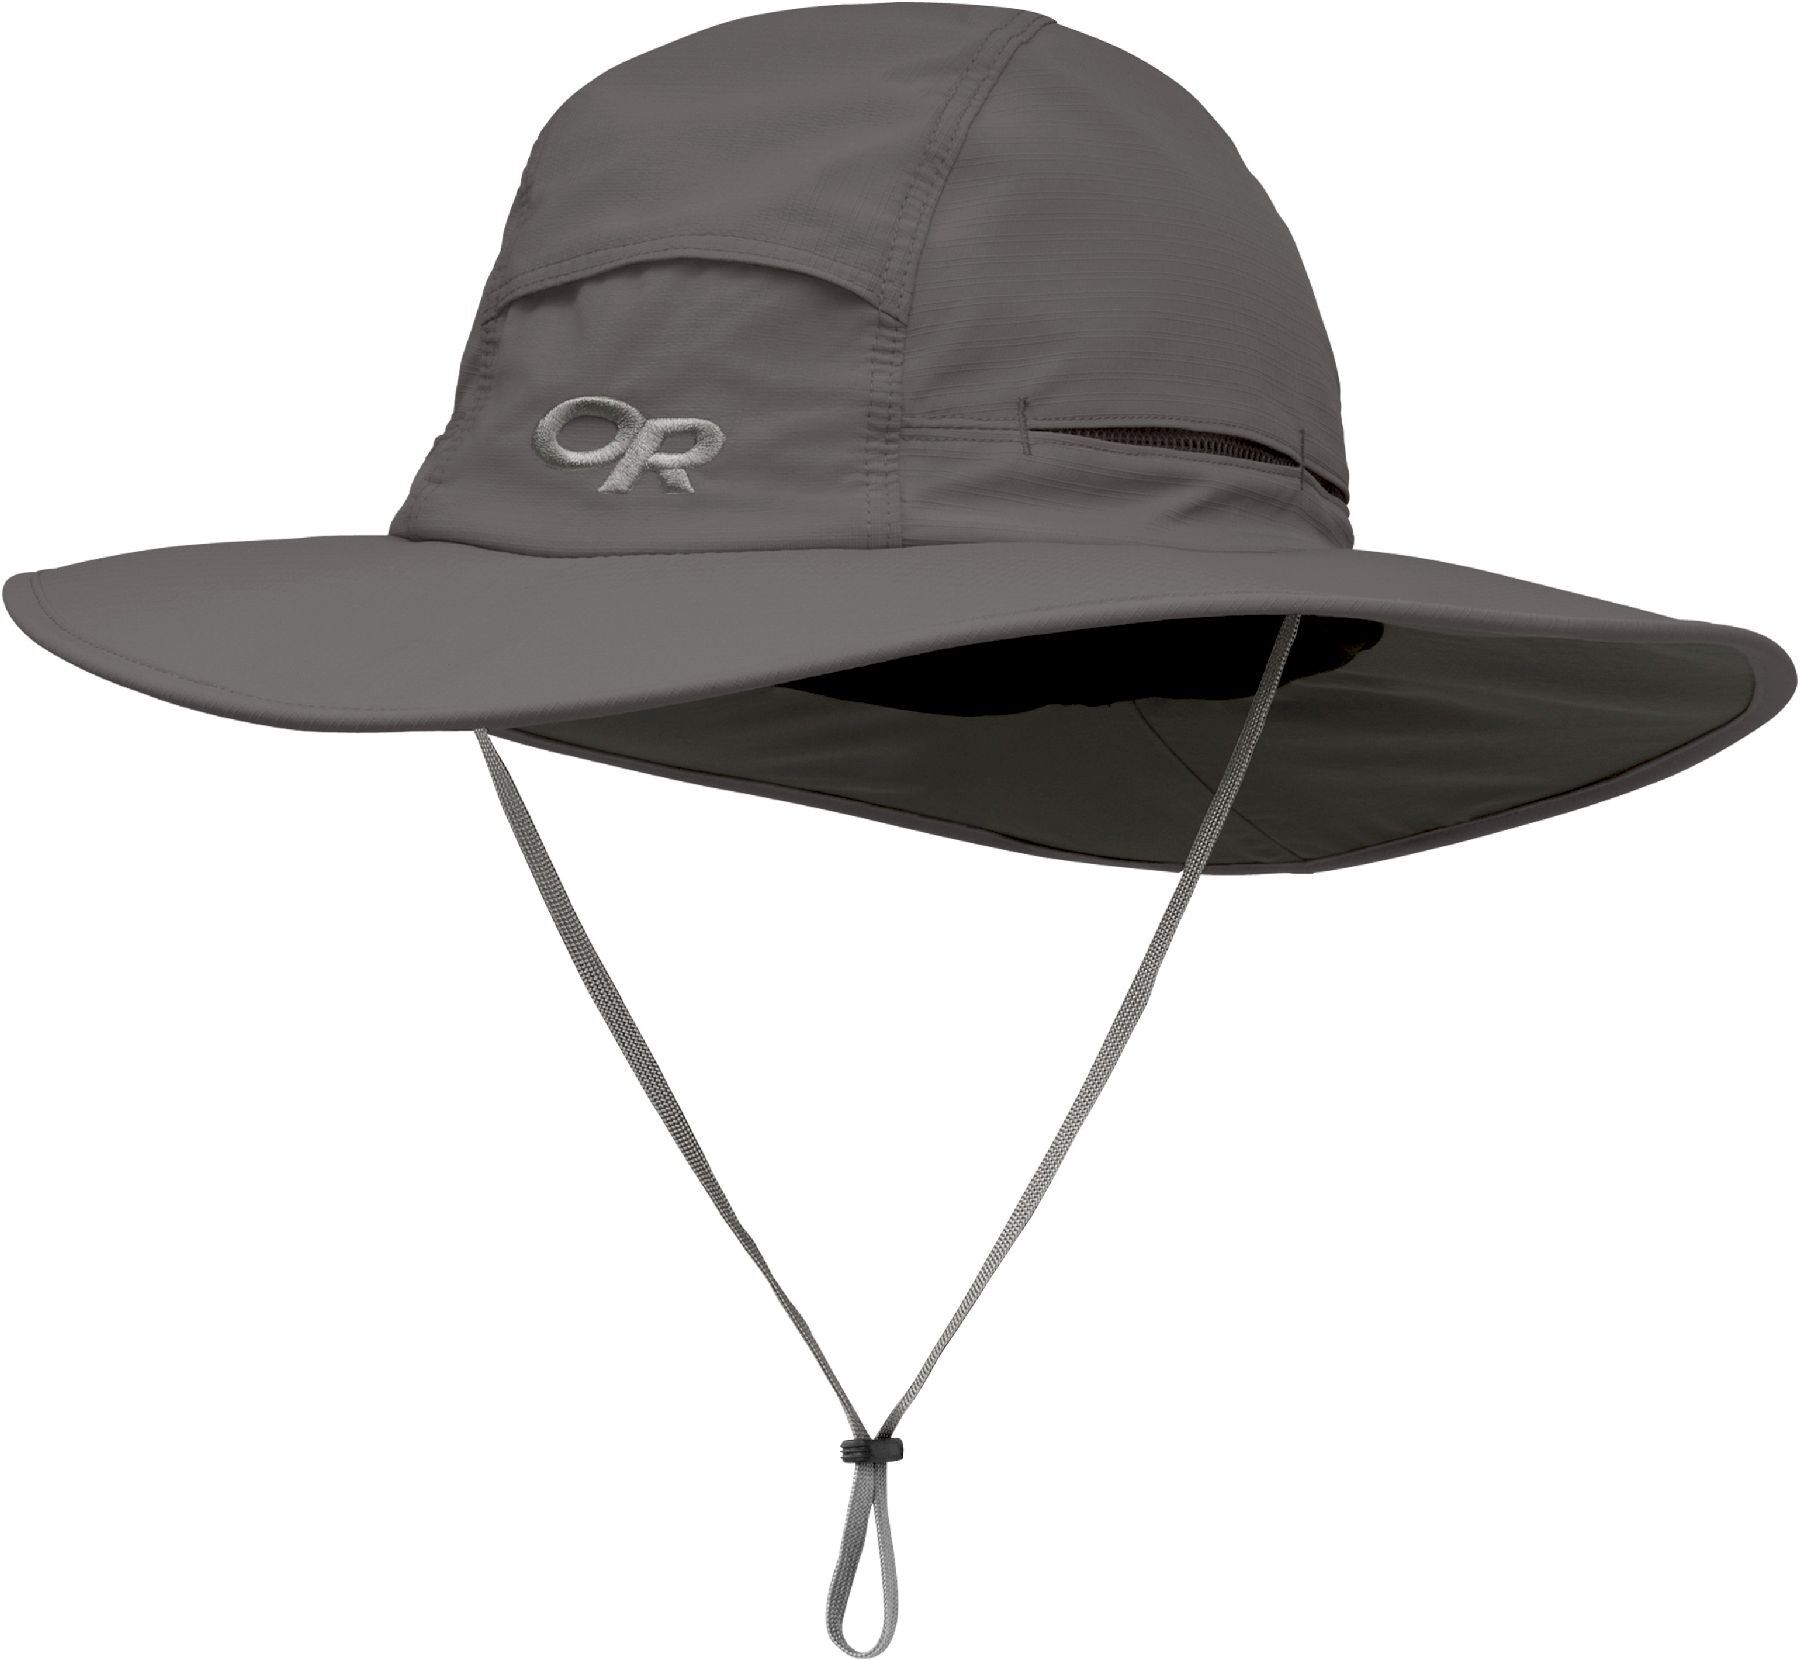 Outdoor Research Sombriolet Sun Hat - Hatt